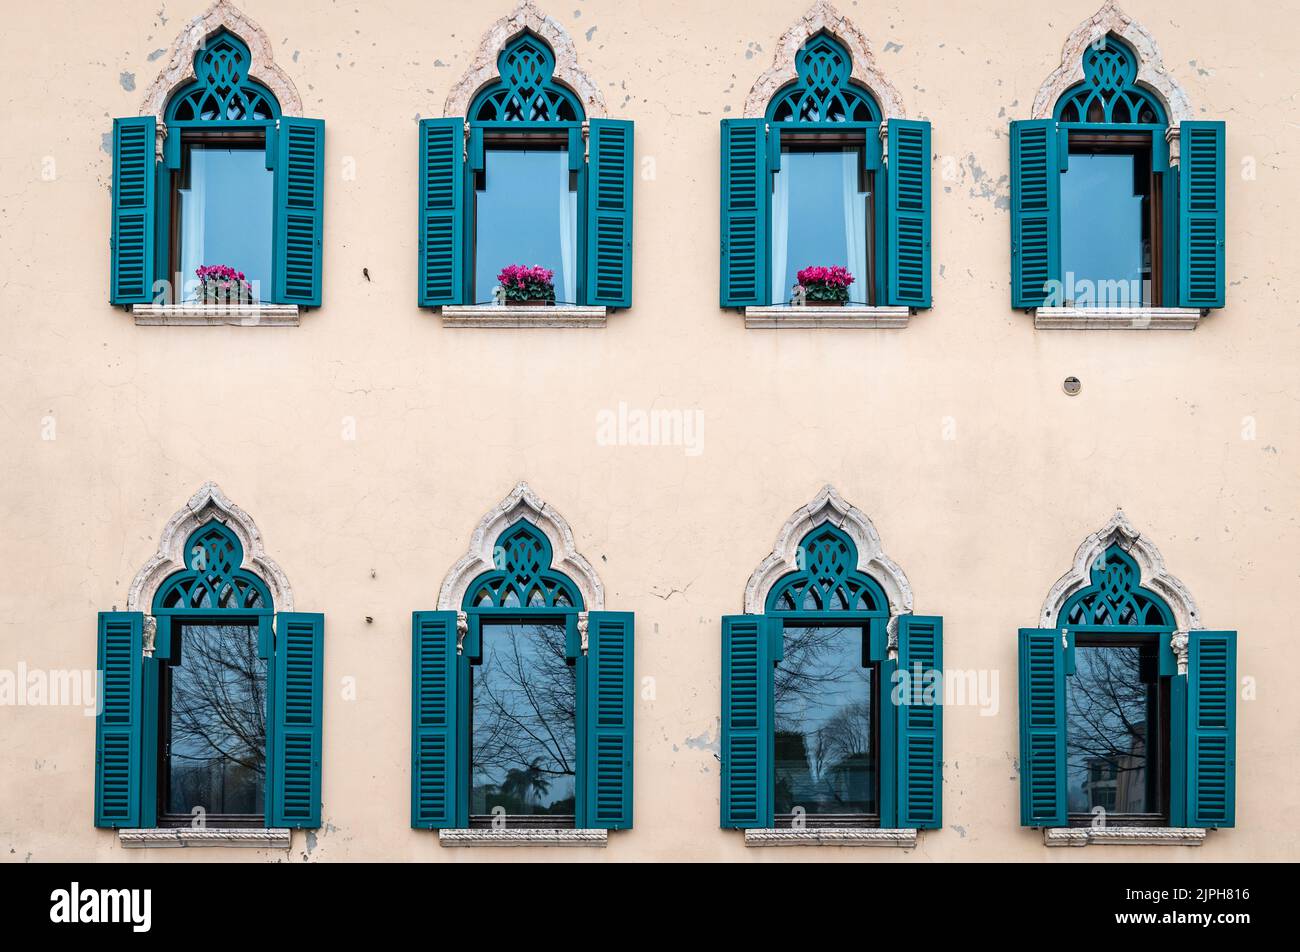 le finestre di uno storico palazzo quattrocentesco - Palazzo Muselli - nel centro storico della città di Verona - Veneto - Italia settentrionale, Foto Stock